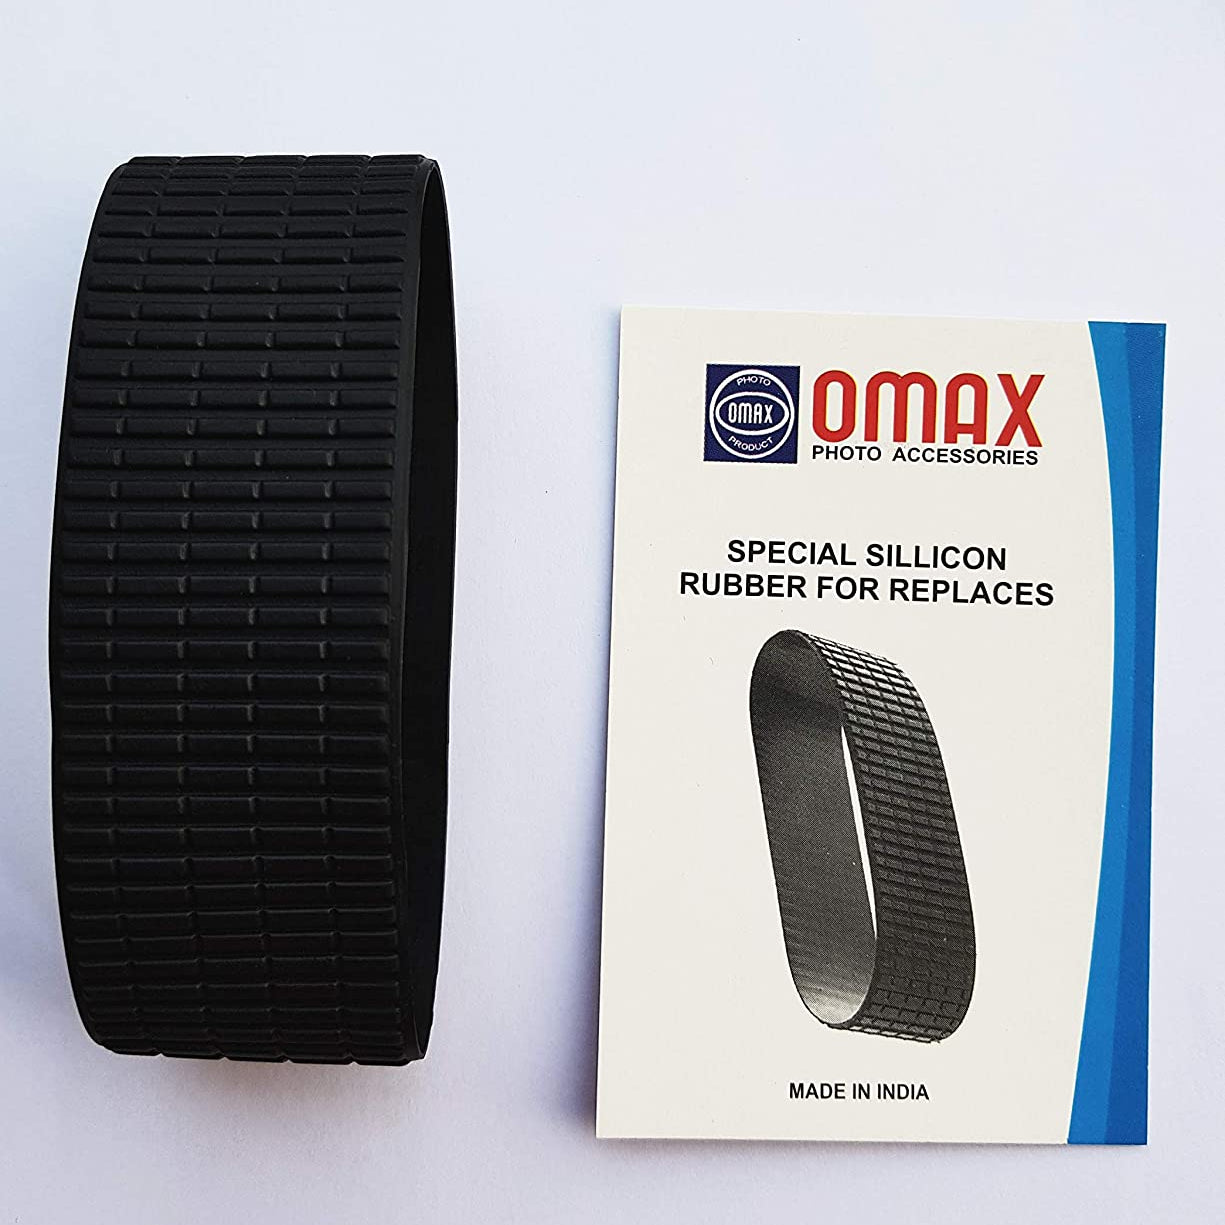 Omax Lens Rubber Part for Nikon af-s dx nikkor 18-105mm f/3.5-5.6g ed vr lens - The Camerashop